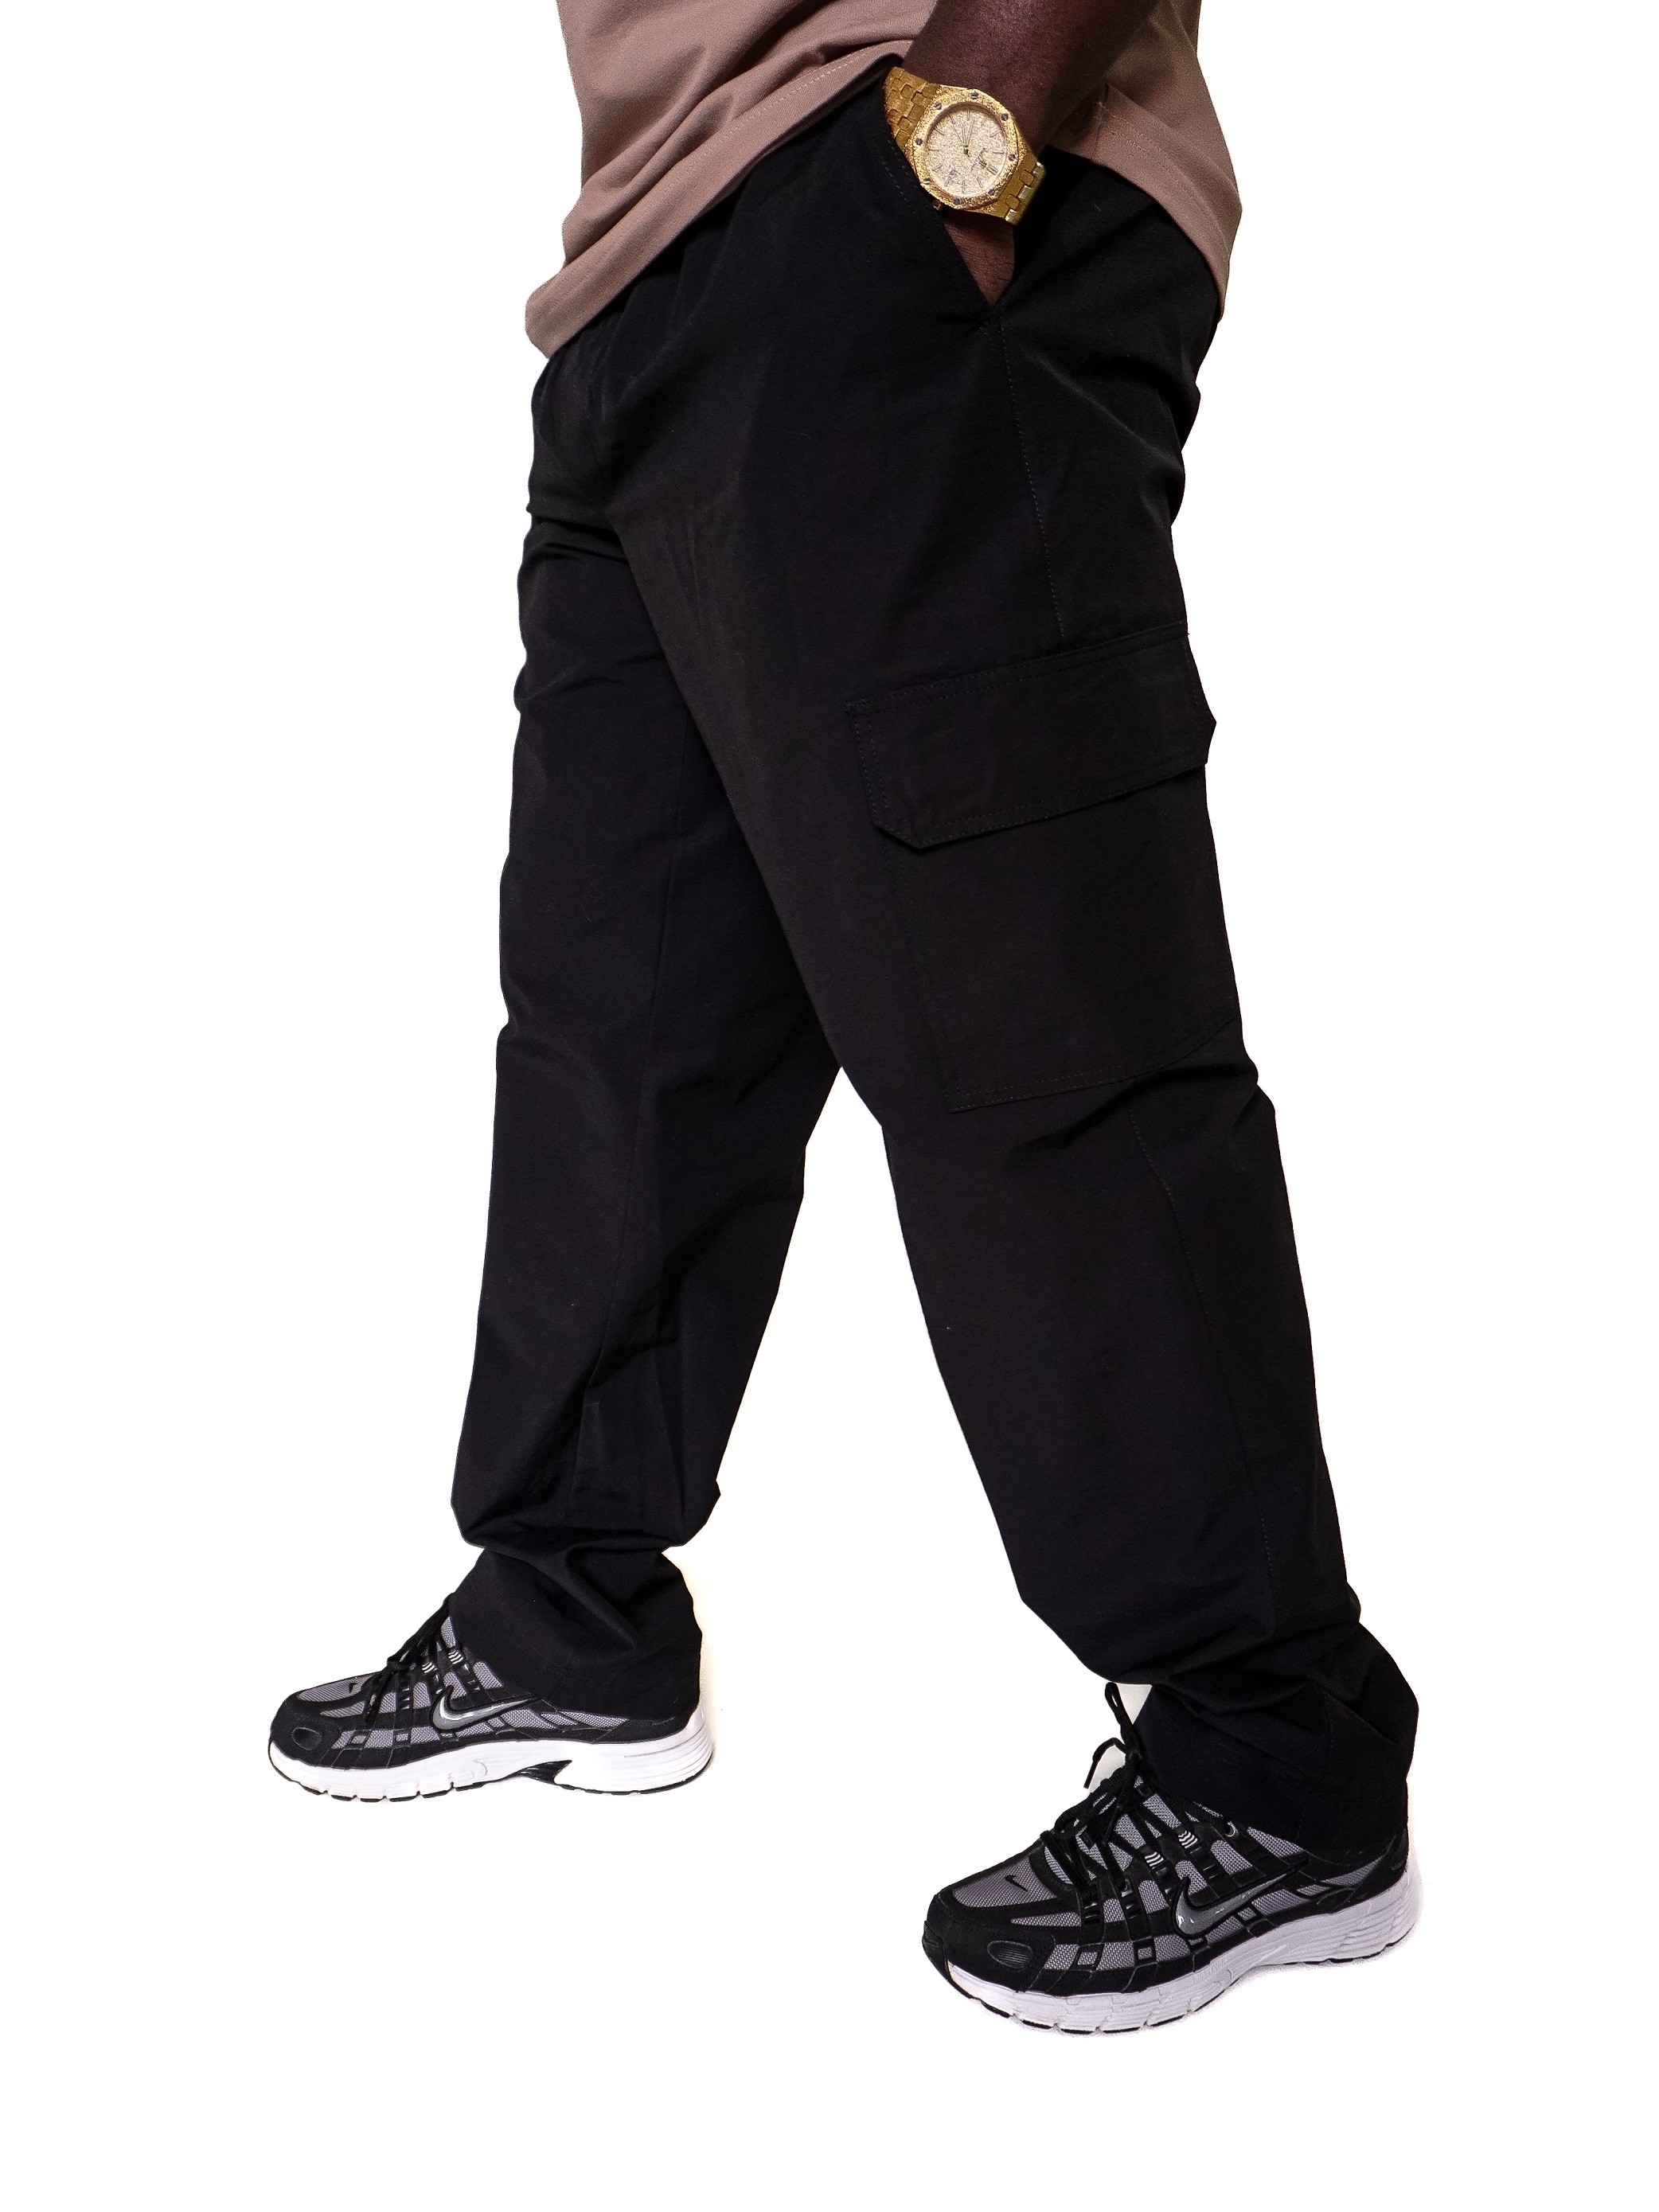 Брюки дороже рубашки на 25. Штаны карго черные. Штаны карго широкие. Штаны карго мужские широкие Carhartt. Штаны для брейка.